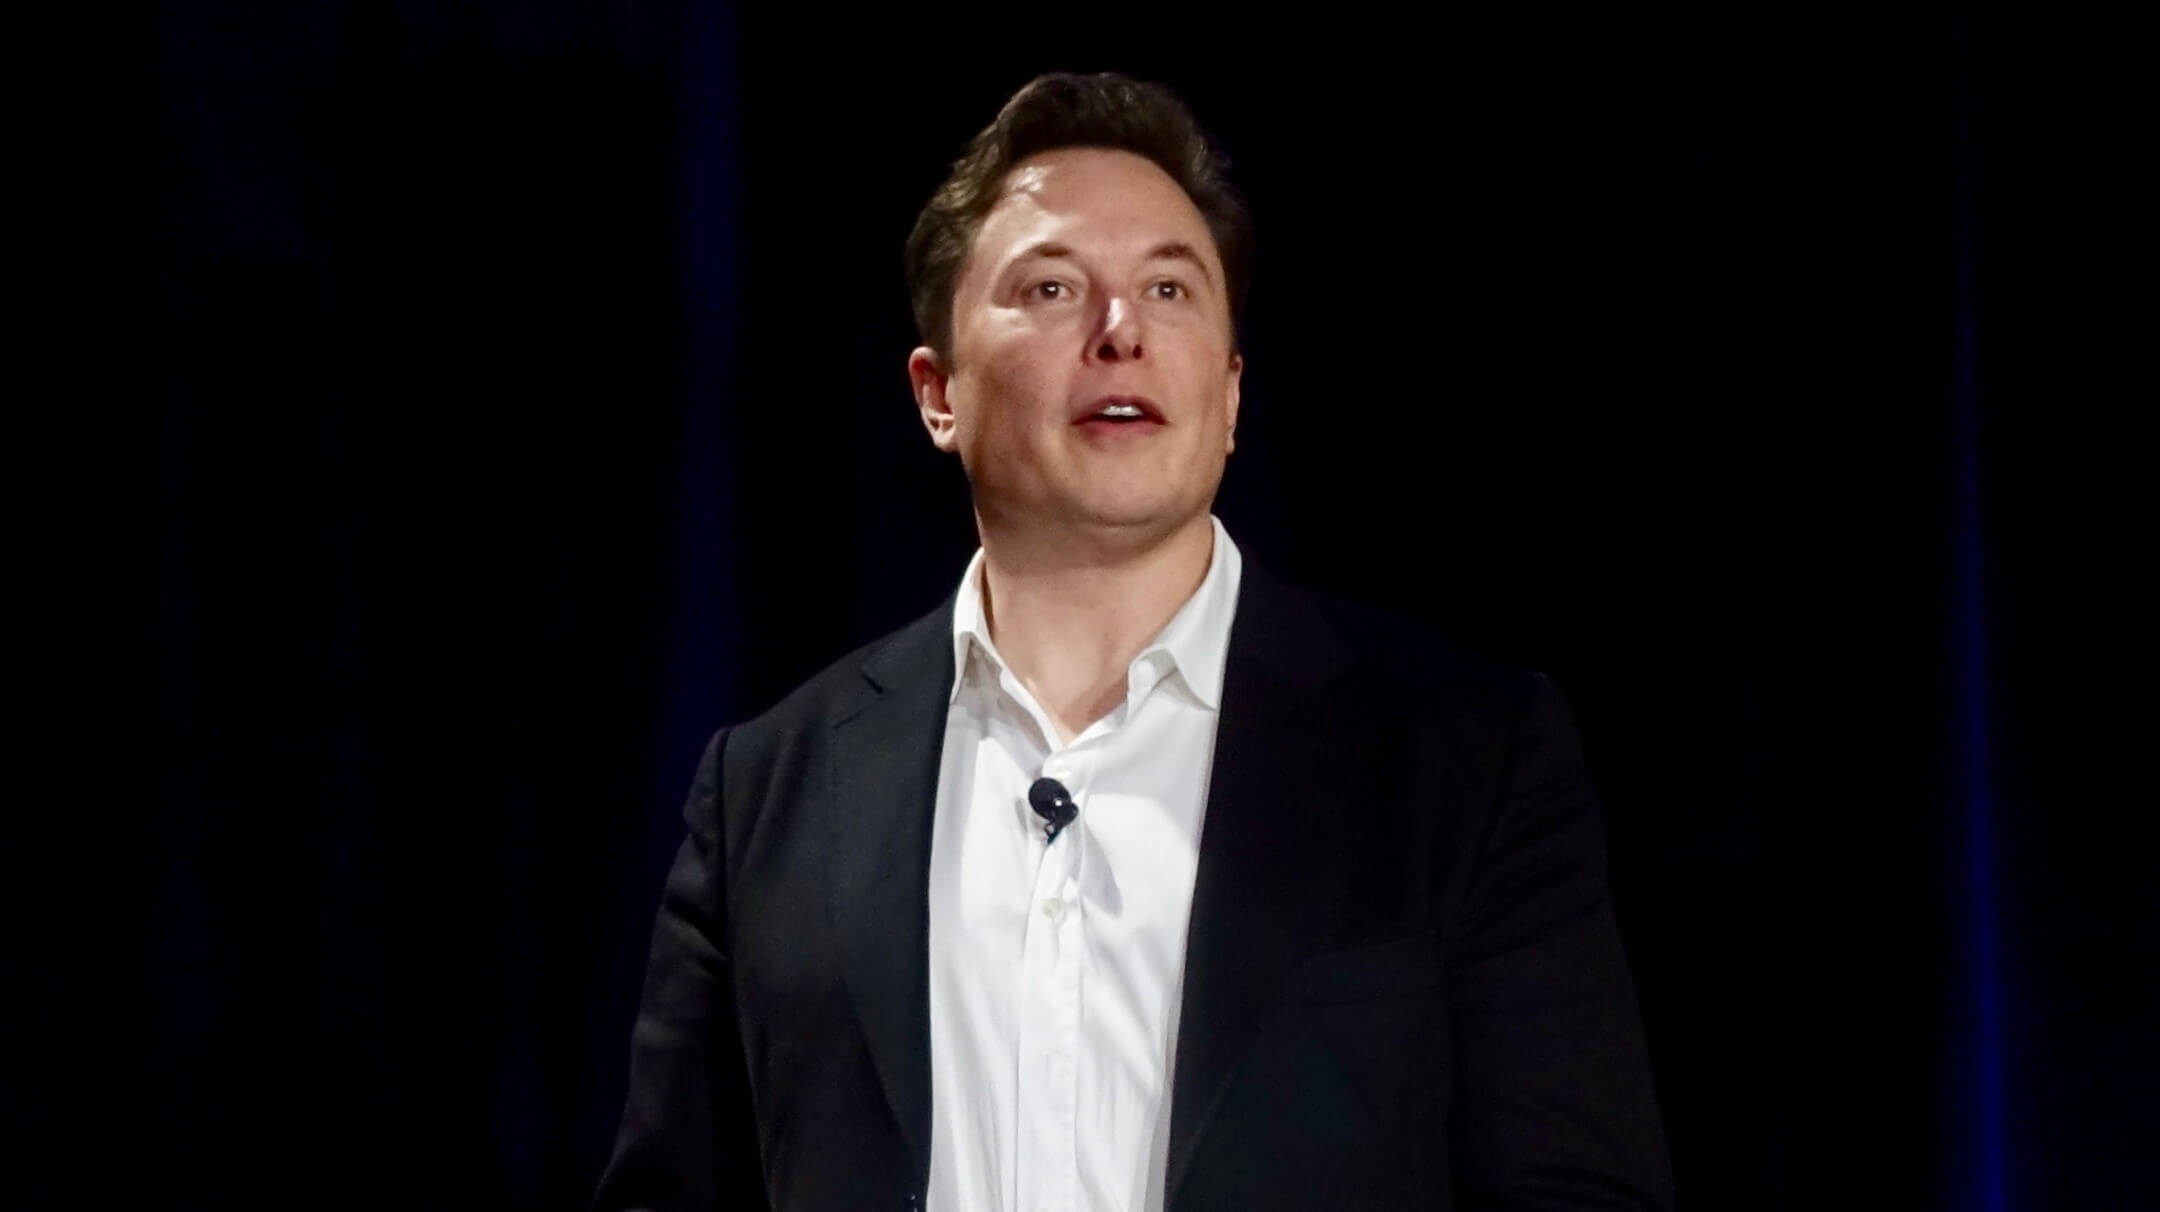 Musk berkata harga Tesla ‘membiayai terjamin’ sebanyak $420 tidak dimaksudkan untuk menjadi kelakar